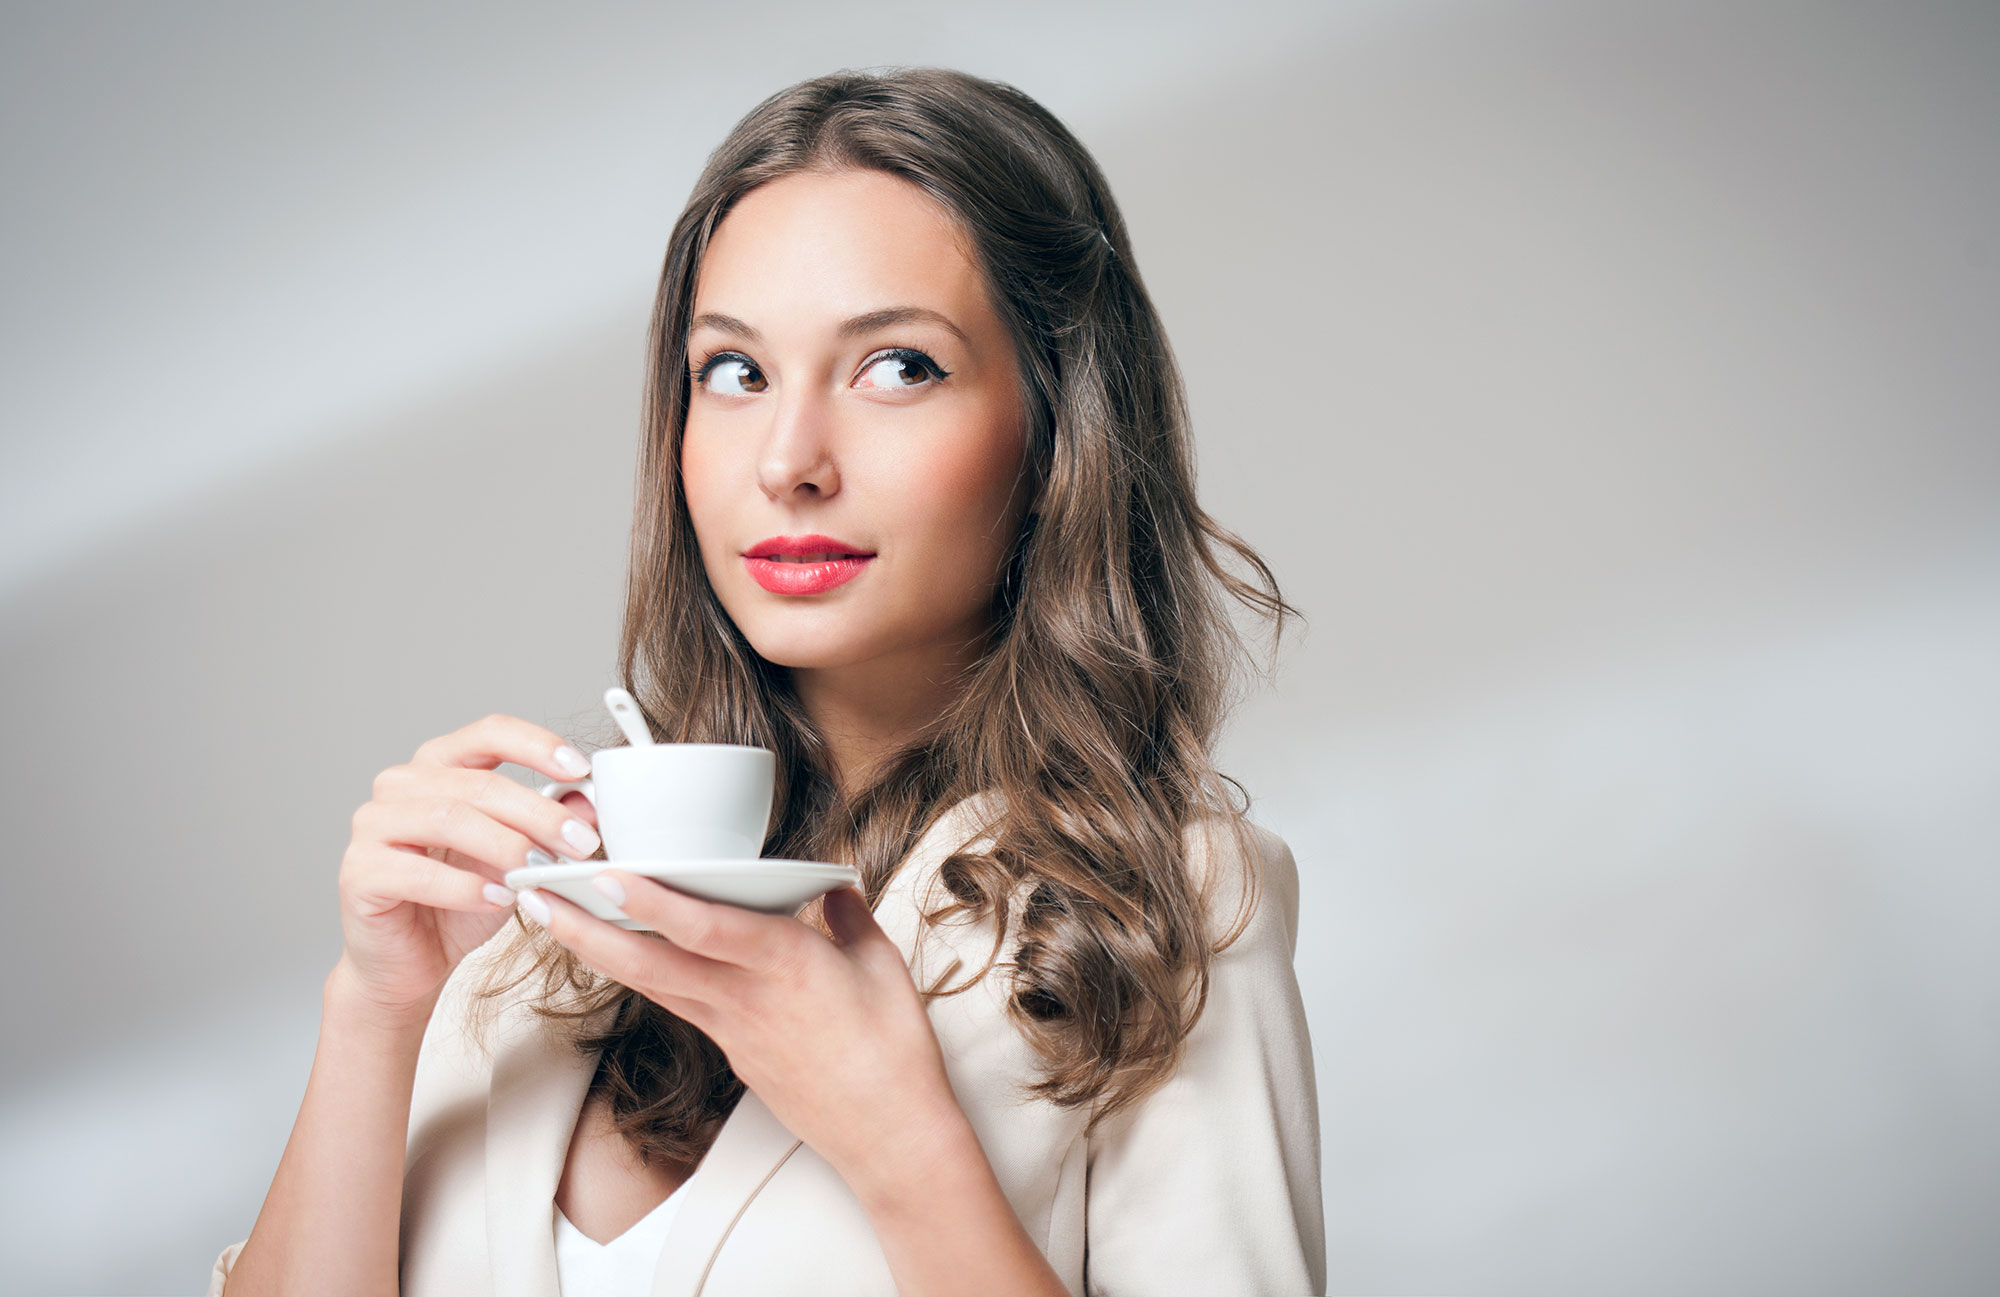 https://tdev.worekkawy.pl/wp-content/uploads/2022/03/young-woman-drinking-coffee-Worek-Kawy.jpg